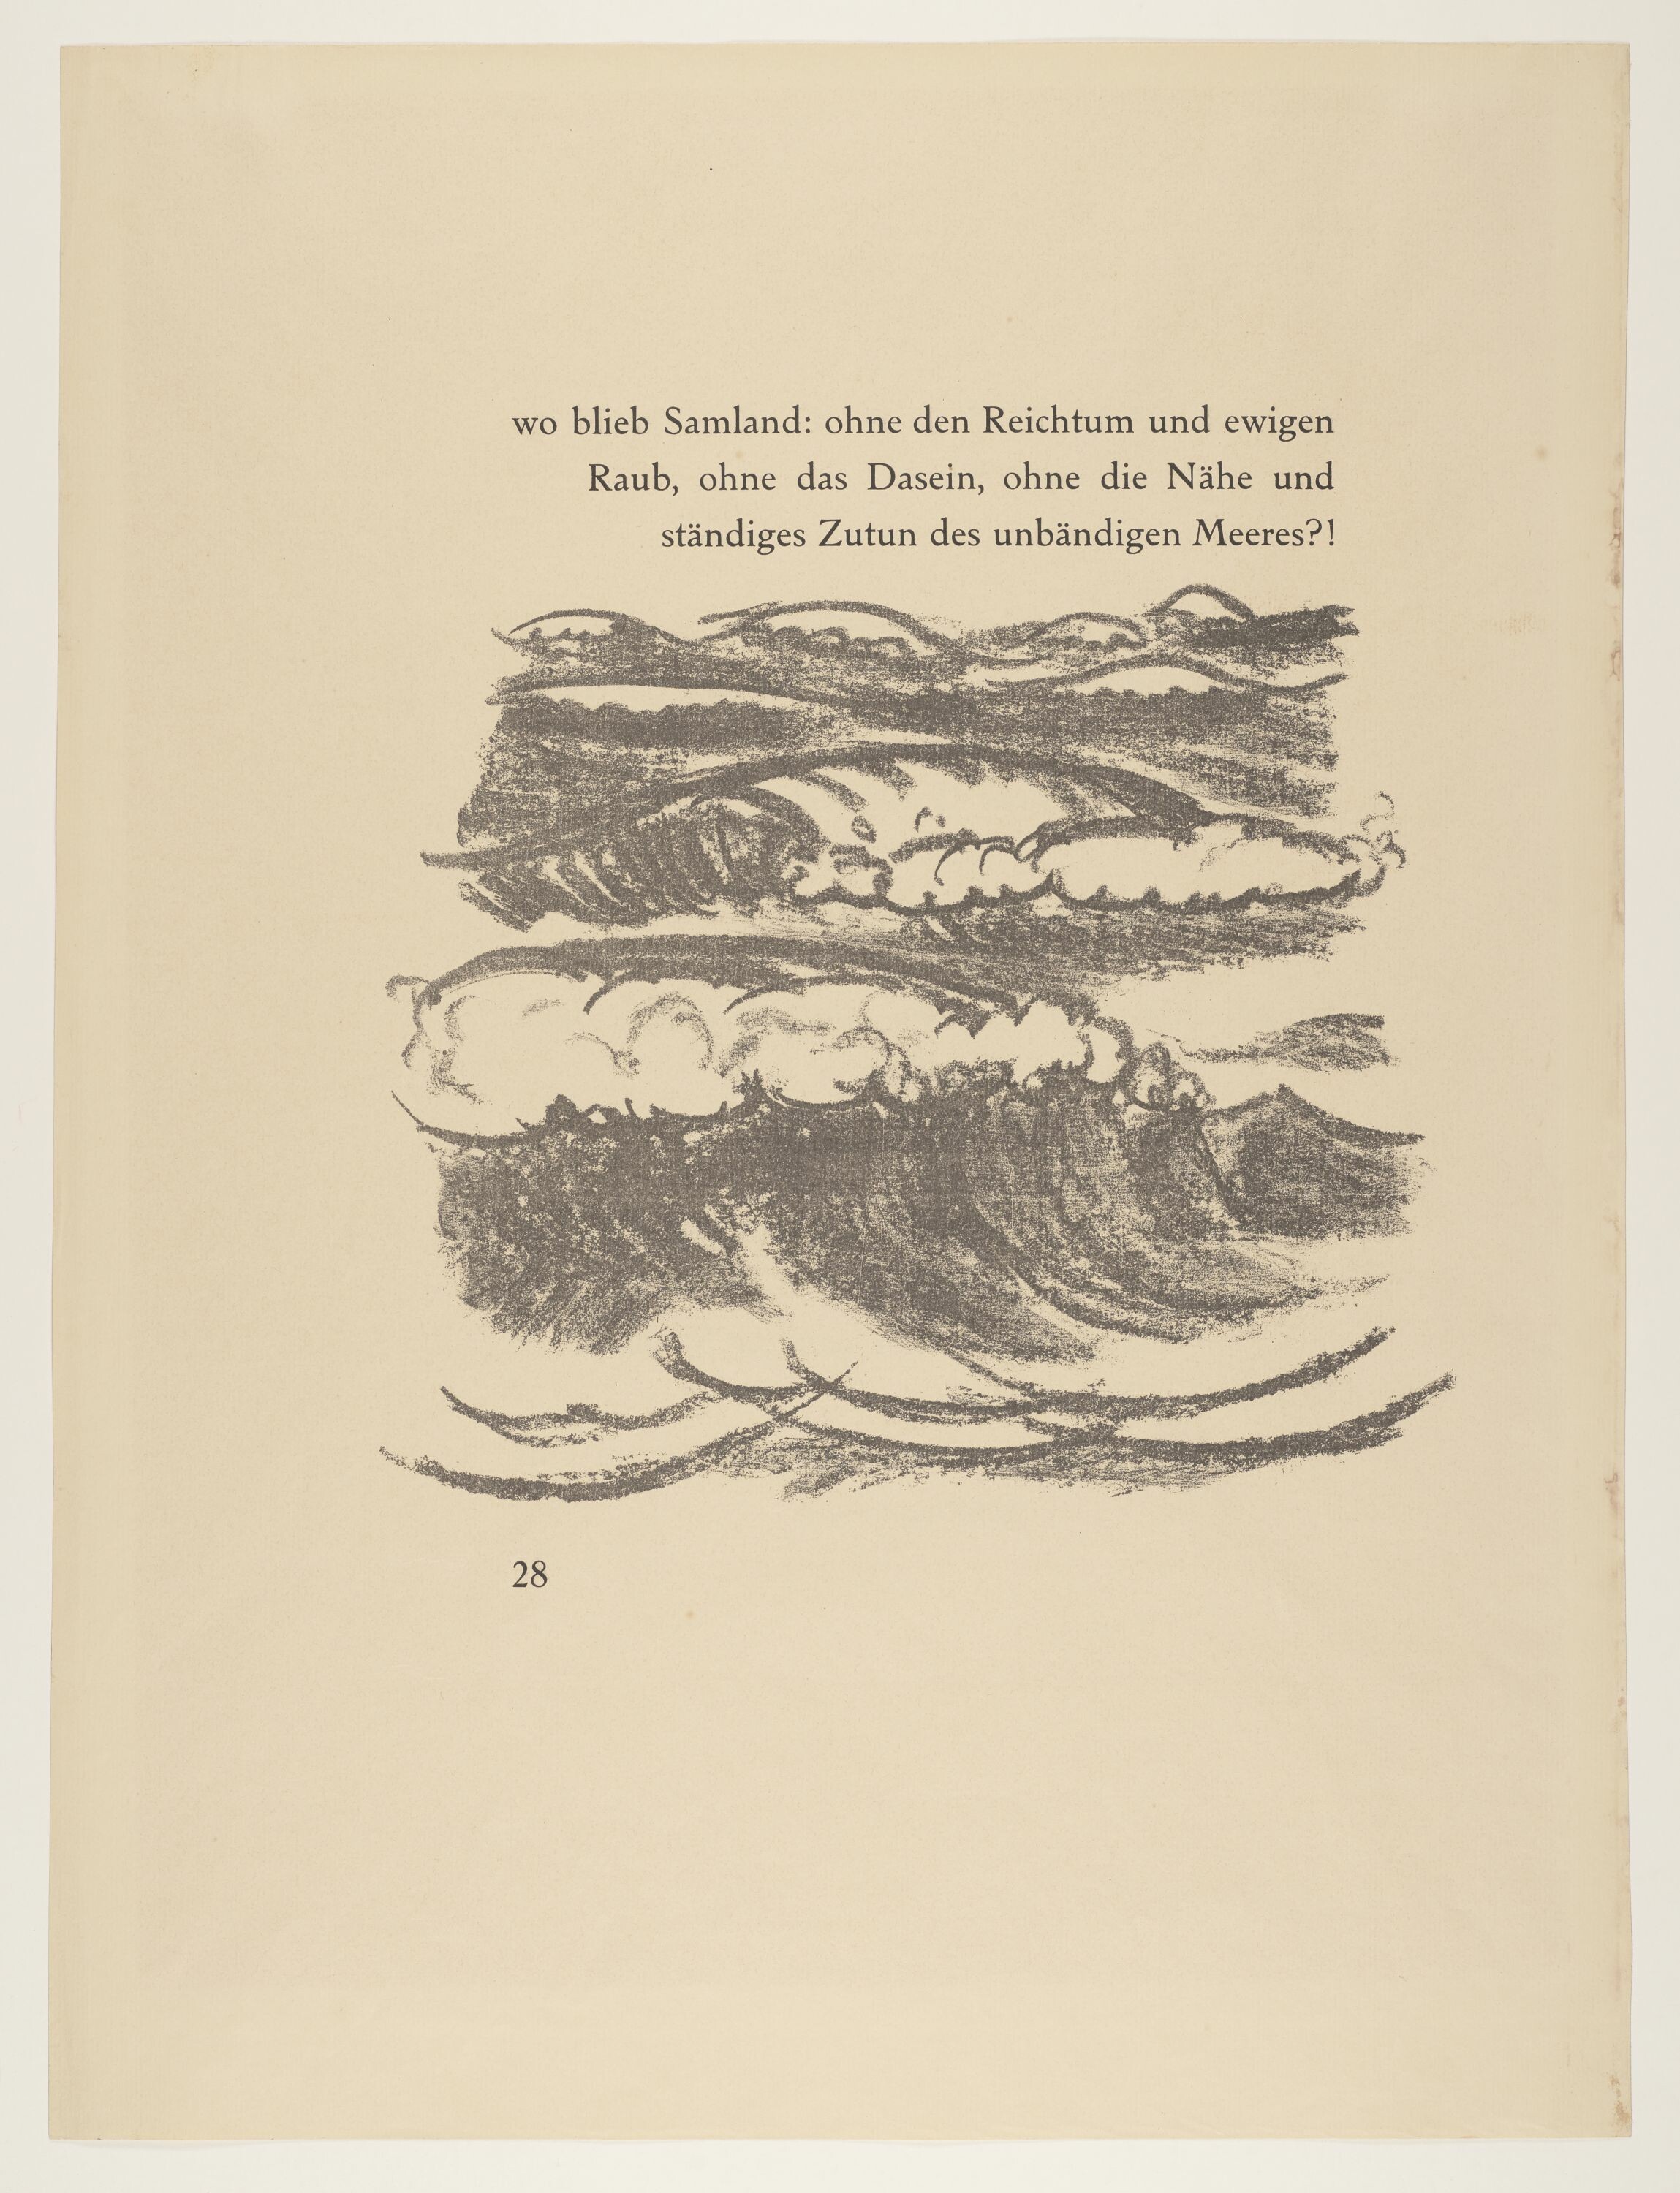 Wellen, aus: Heinrich Lautensack: Paraphrasen zur Samländischen Ode, 21 Lithografien, Seite 28 (© Pechstein - Hamburg / Tökendorf, 2021 | VG Bild-Kunst, Bonn 2021 RR-F)